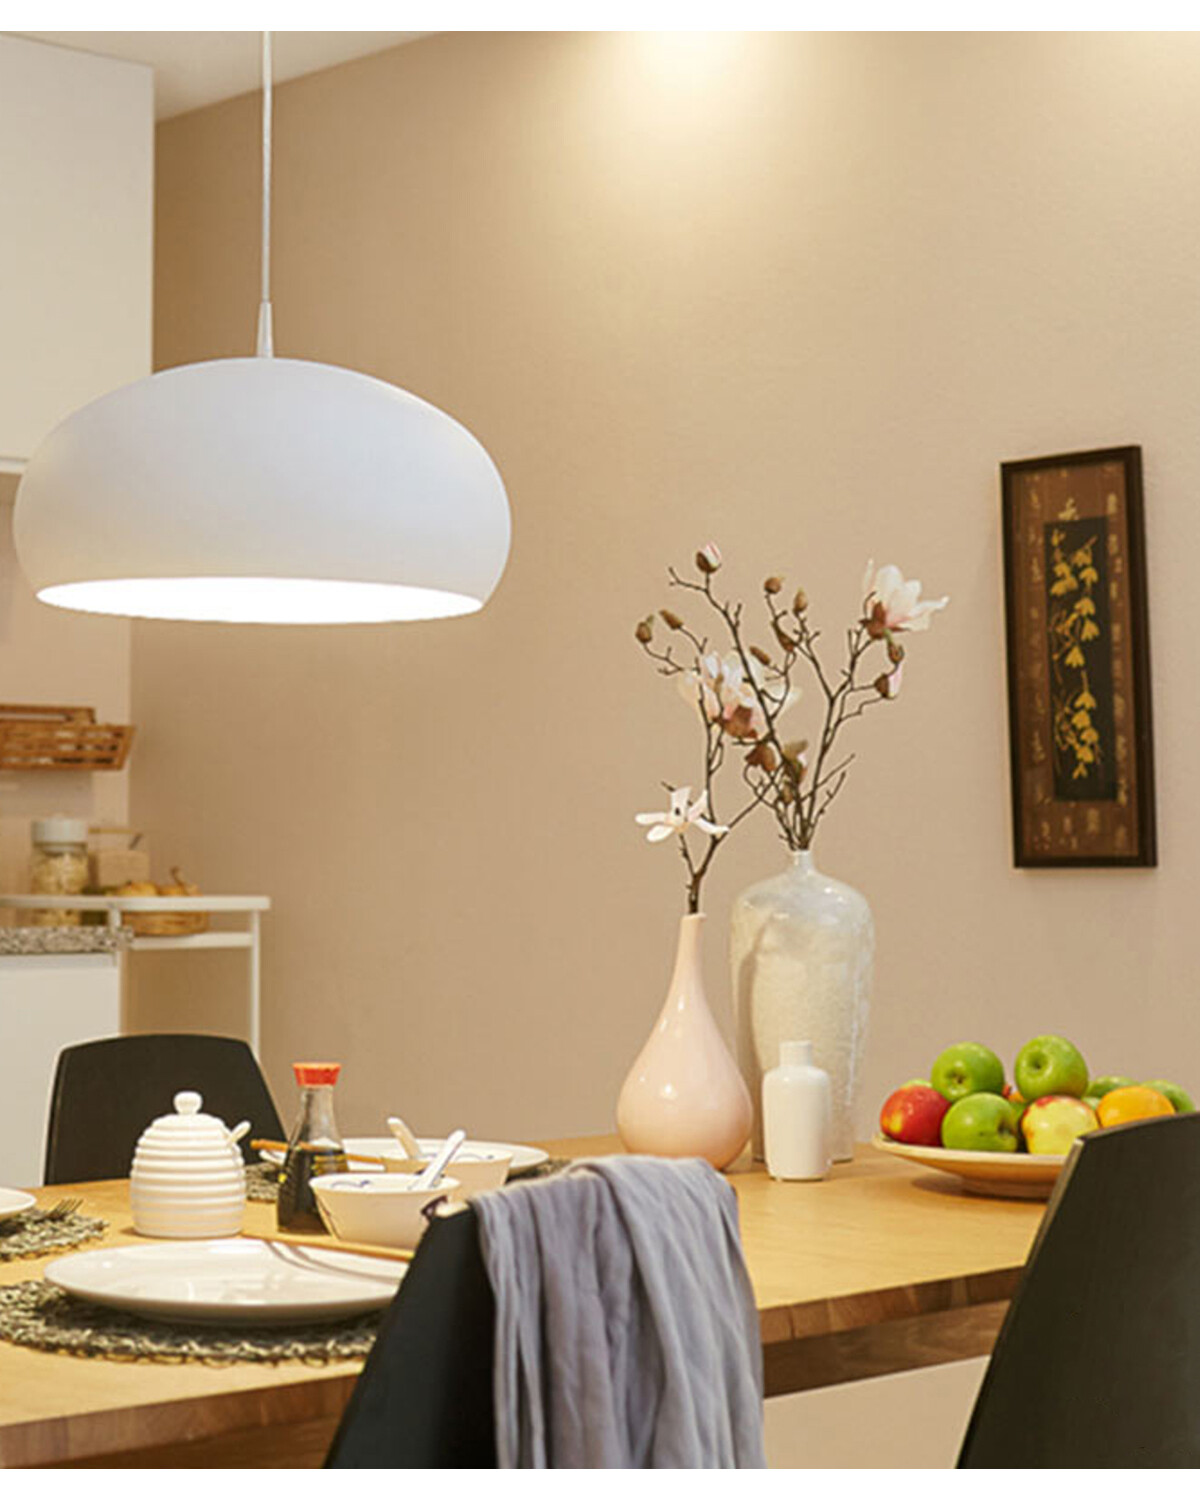 Lámpara LED Smart Wifi Xiaomi E27 blanco cálido 2700k — Electroventas